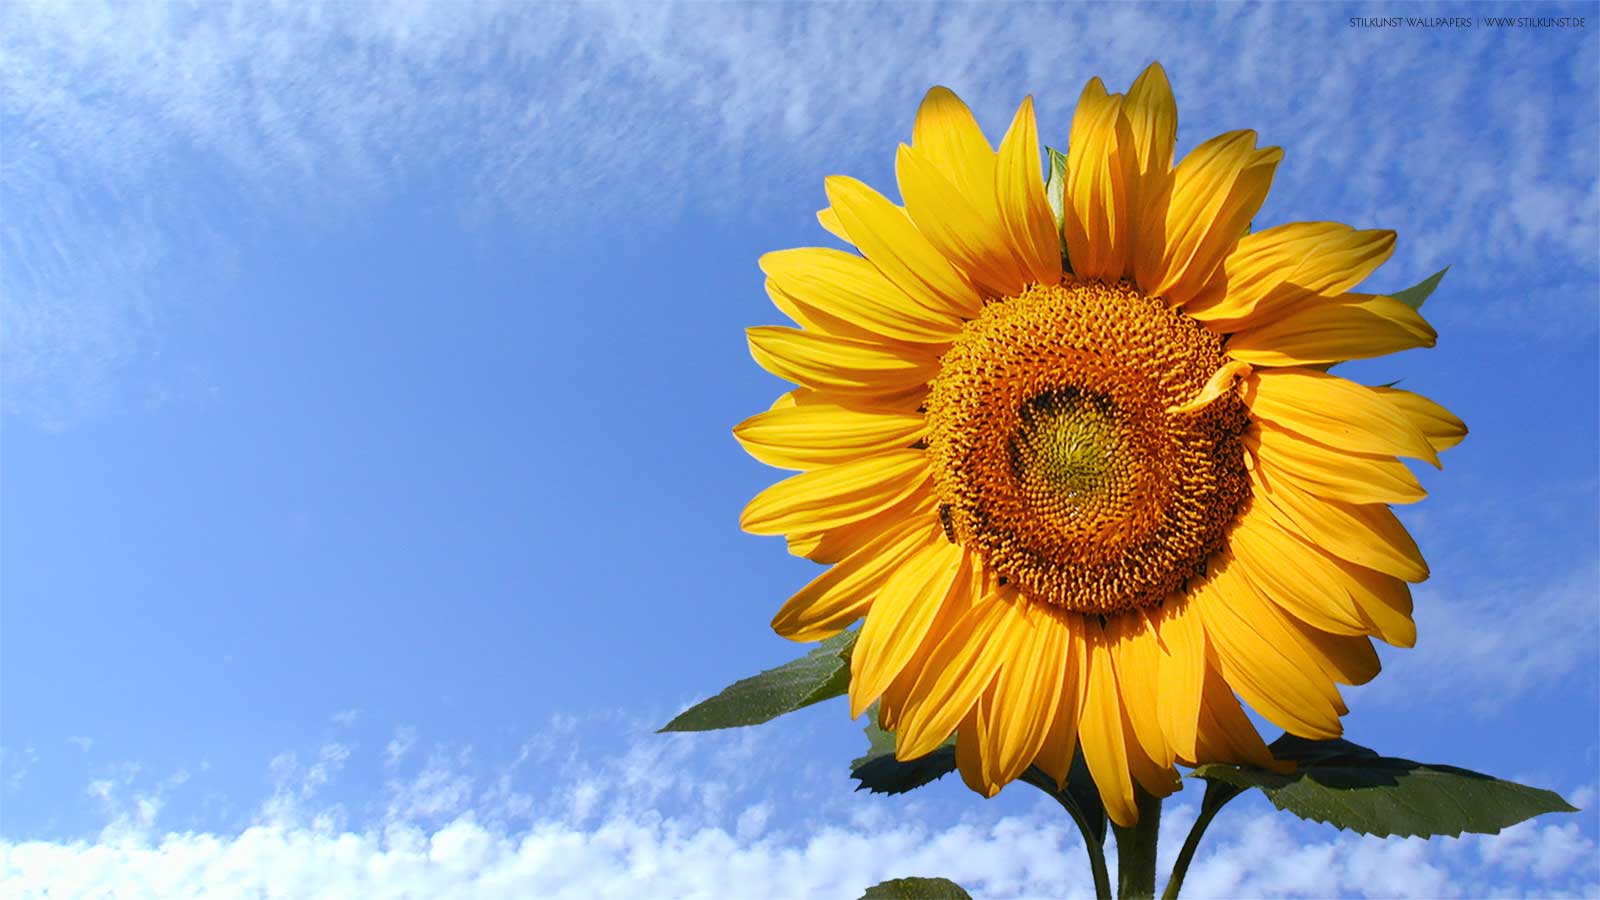 Sonnenblume | 1600 x 900px | Bild: ©by Sabrina | Reiner | www.stilkunst.de | Lizenz: CC BY-SA